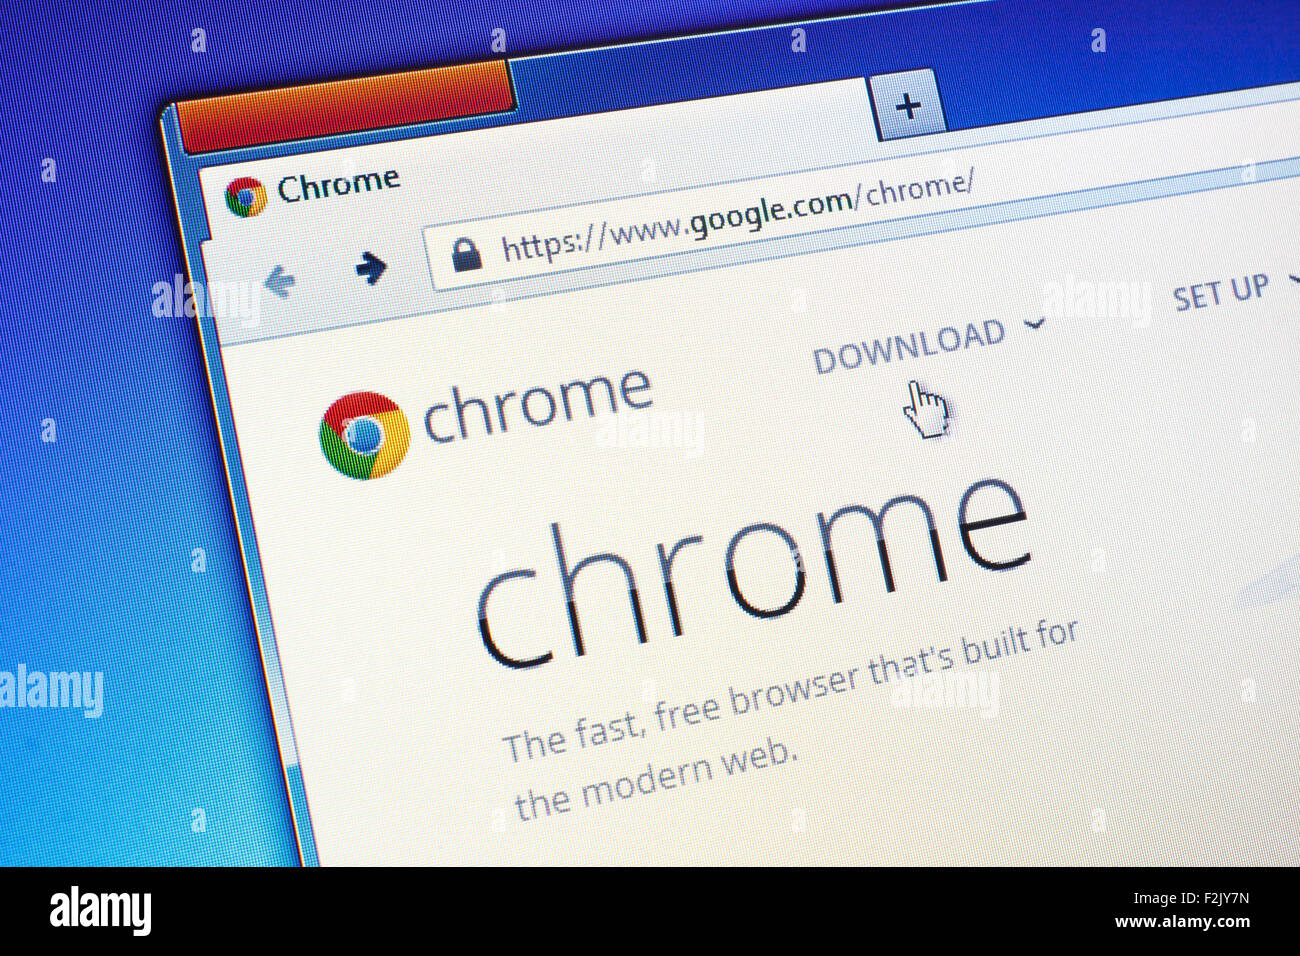 GDANSK, POLOGNE - Le 23 juillet 2015. Google Chrome Page d'accueil sur l'écran d'ordinateur. Google Chrome est un navigateur web développé par freeware Banque D'Images